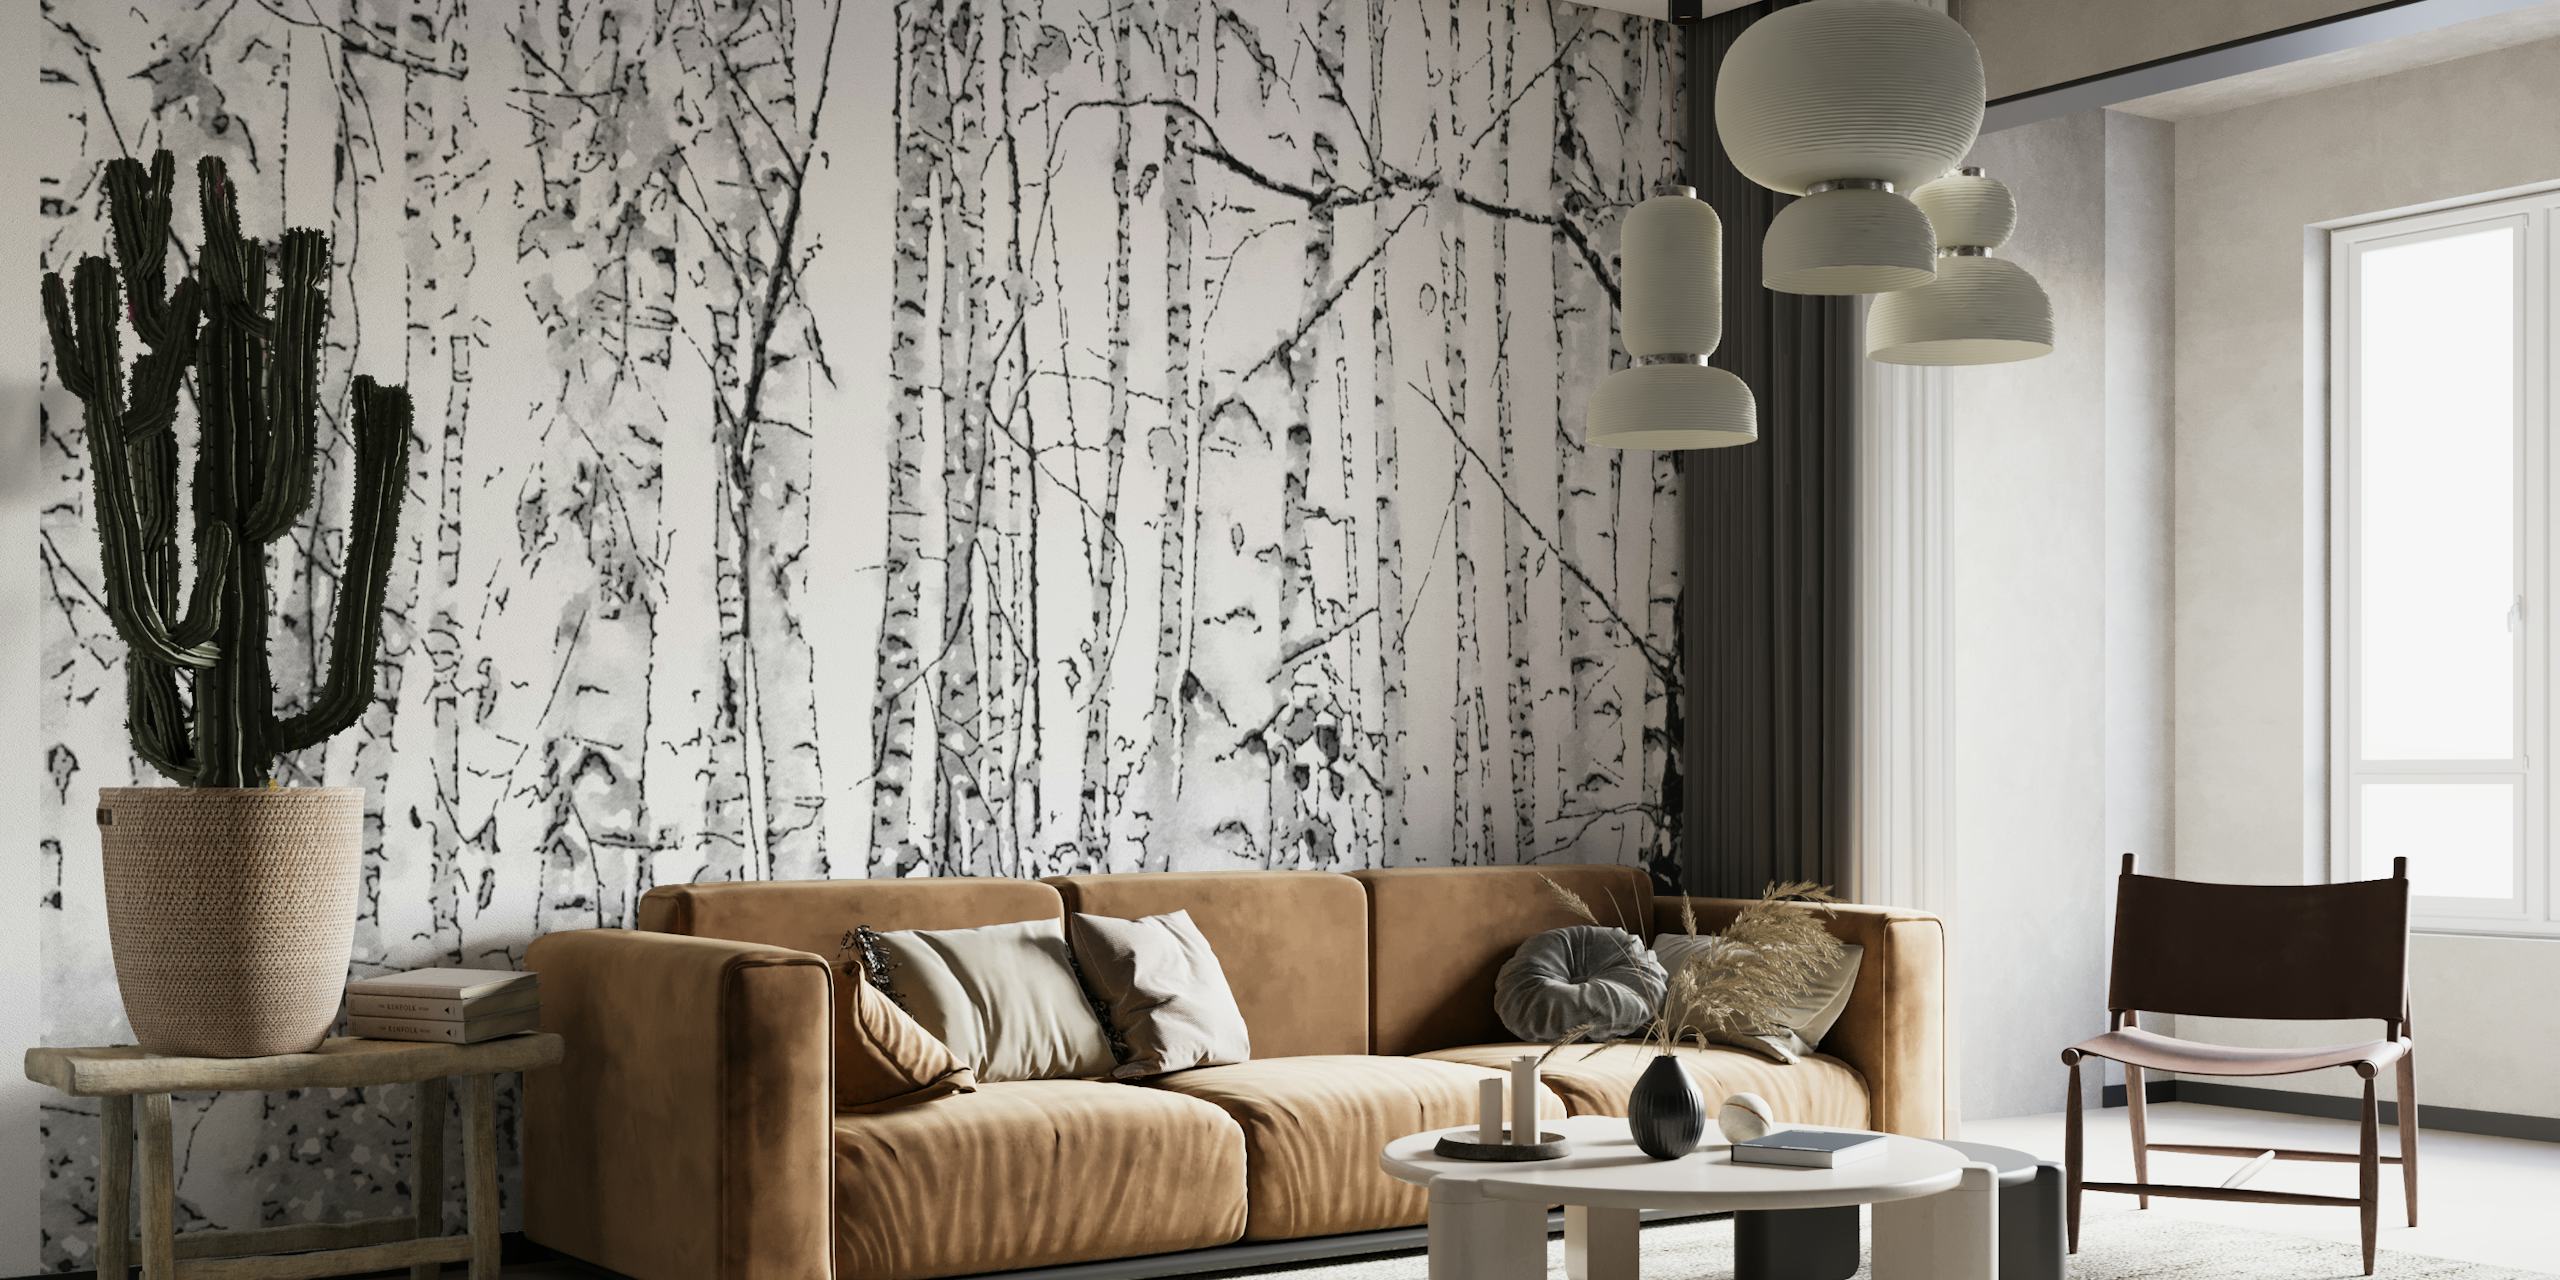 Fotomural vinílico de parede de floresta de bétulas em preto e branco representando a beleza tranquila de bétulas delgadas.